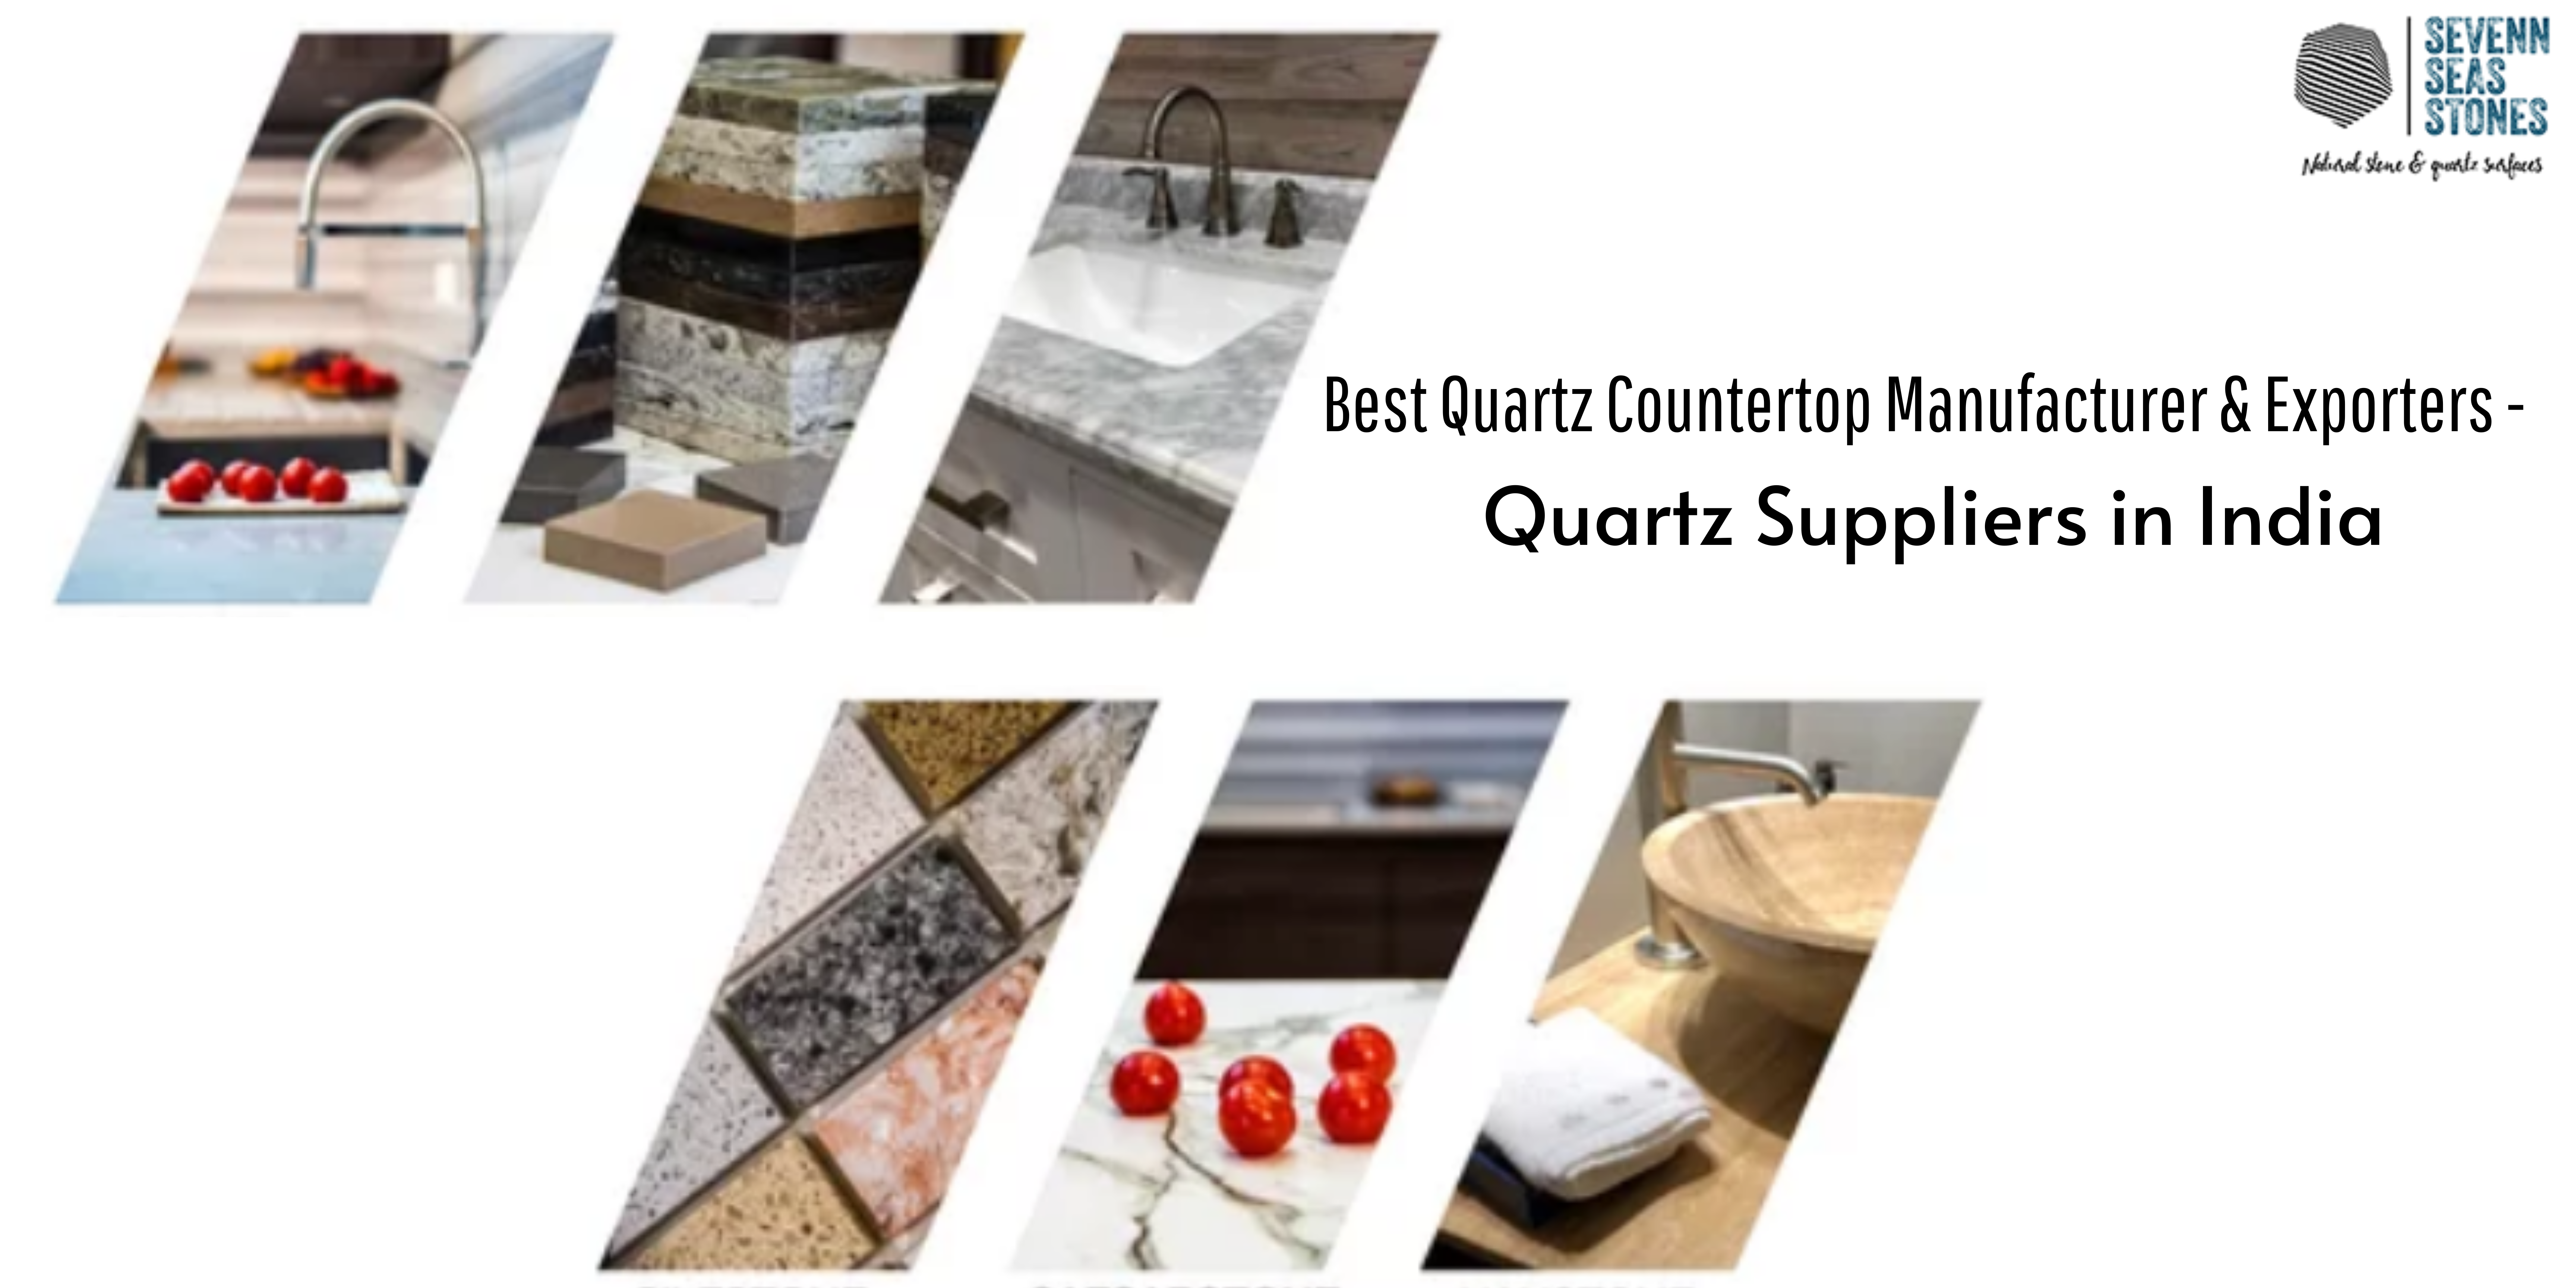 blog-Best Quartz Countertop Manufacturer & Exporters | Quartz Suppliers in India